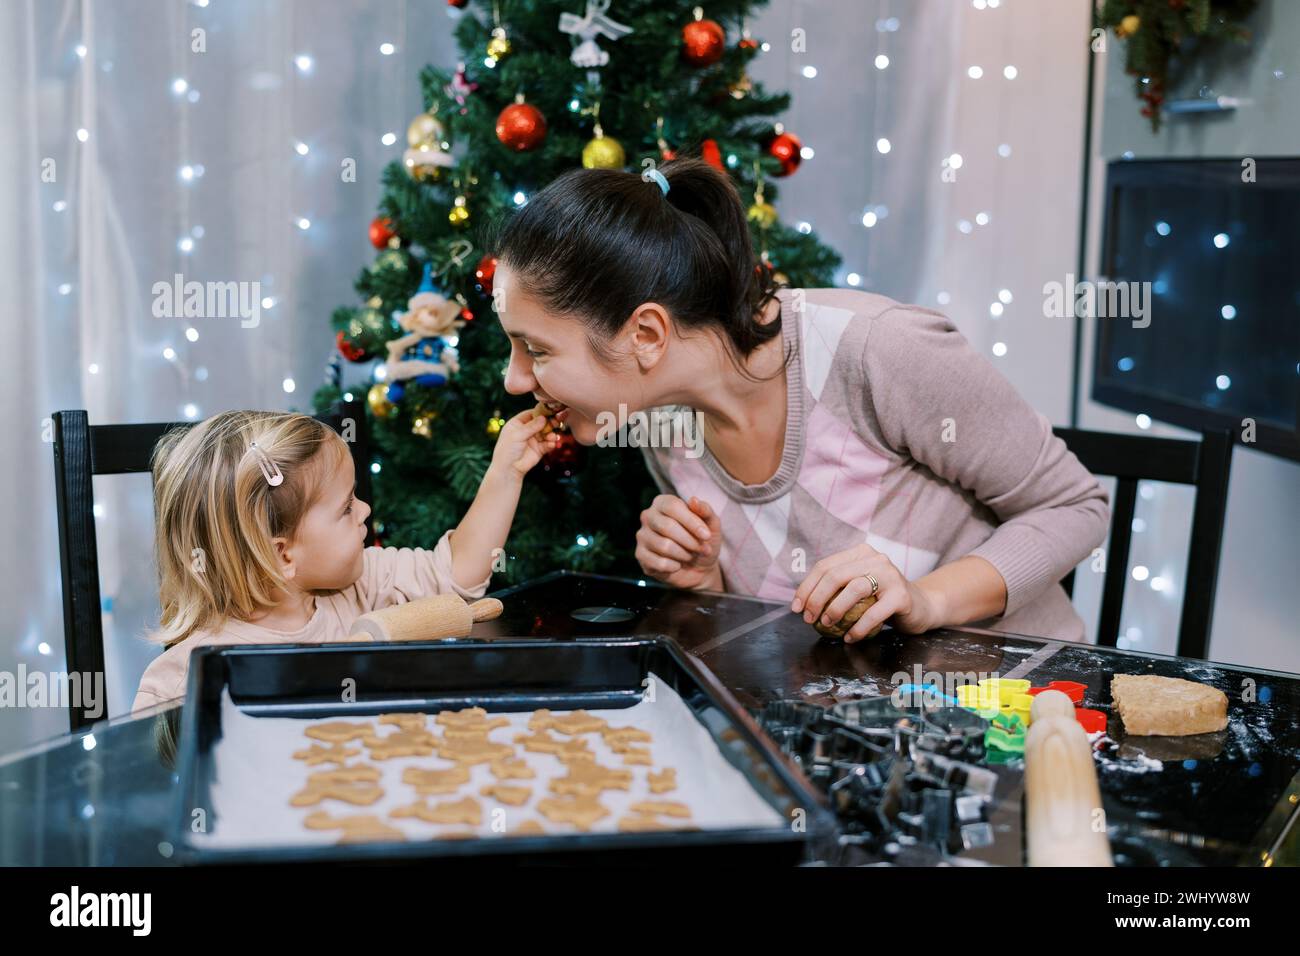 Die kleine Tochter verwöhnt ihre Mutter mit einem Keks, während sie an einem Tisch mit rohen Keksen auf einem Tablett sitzt Stockfoto